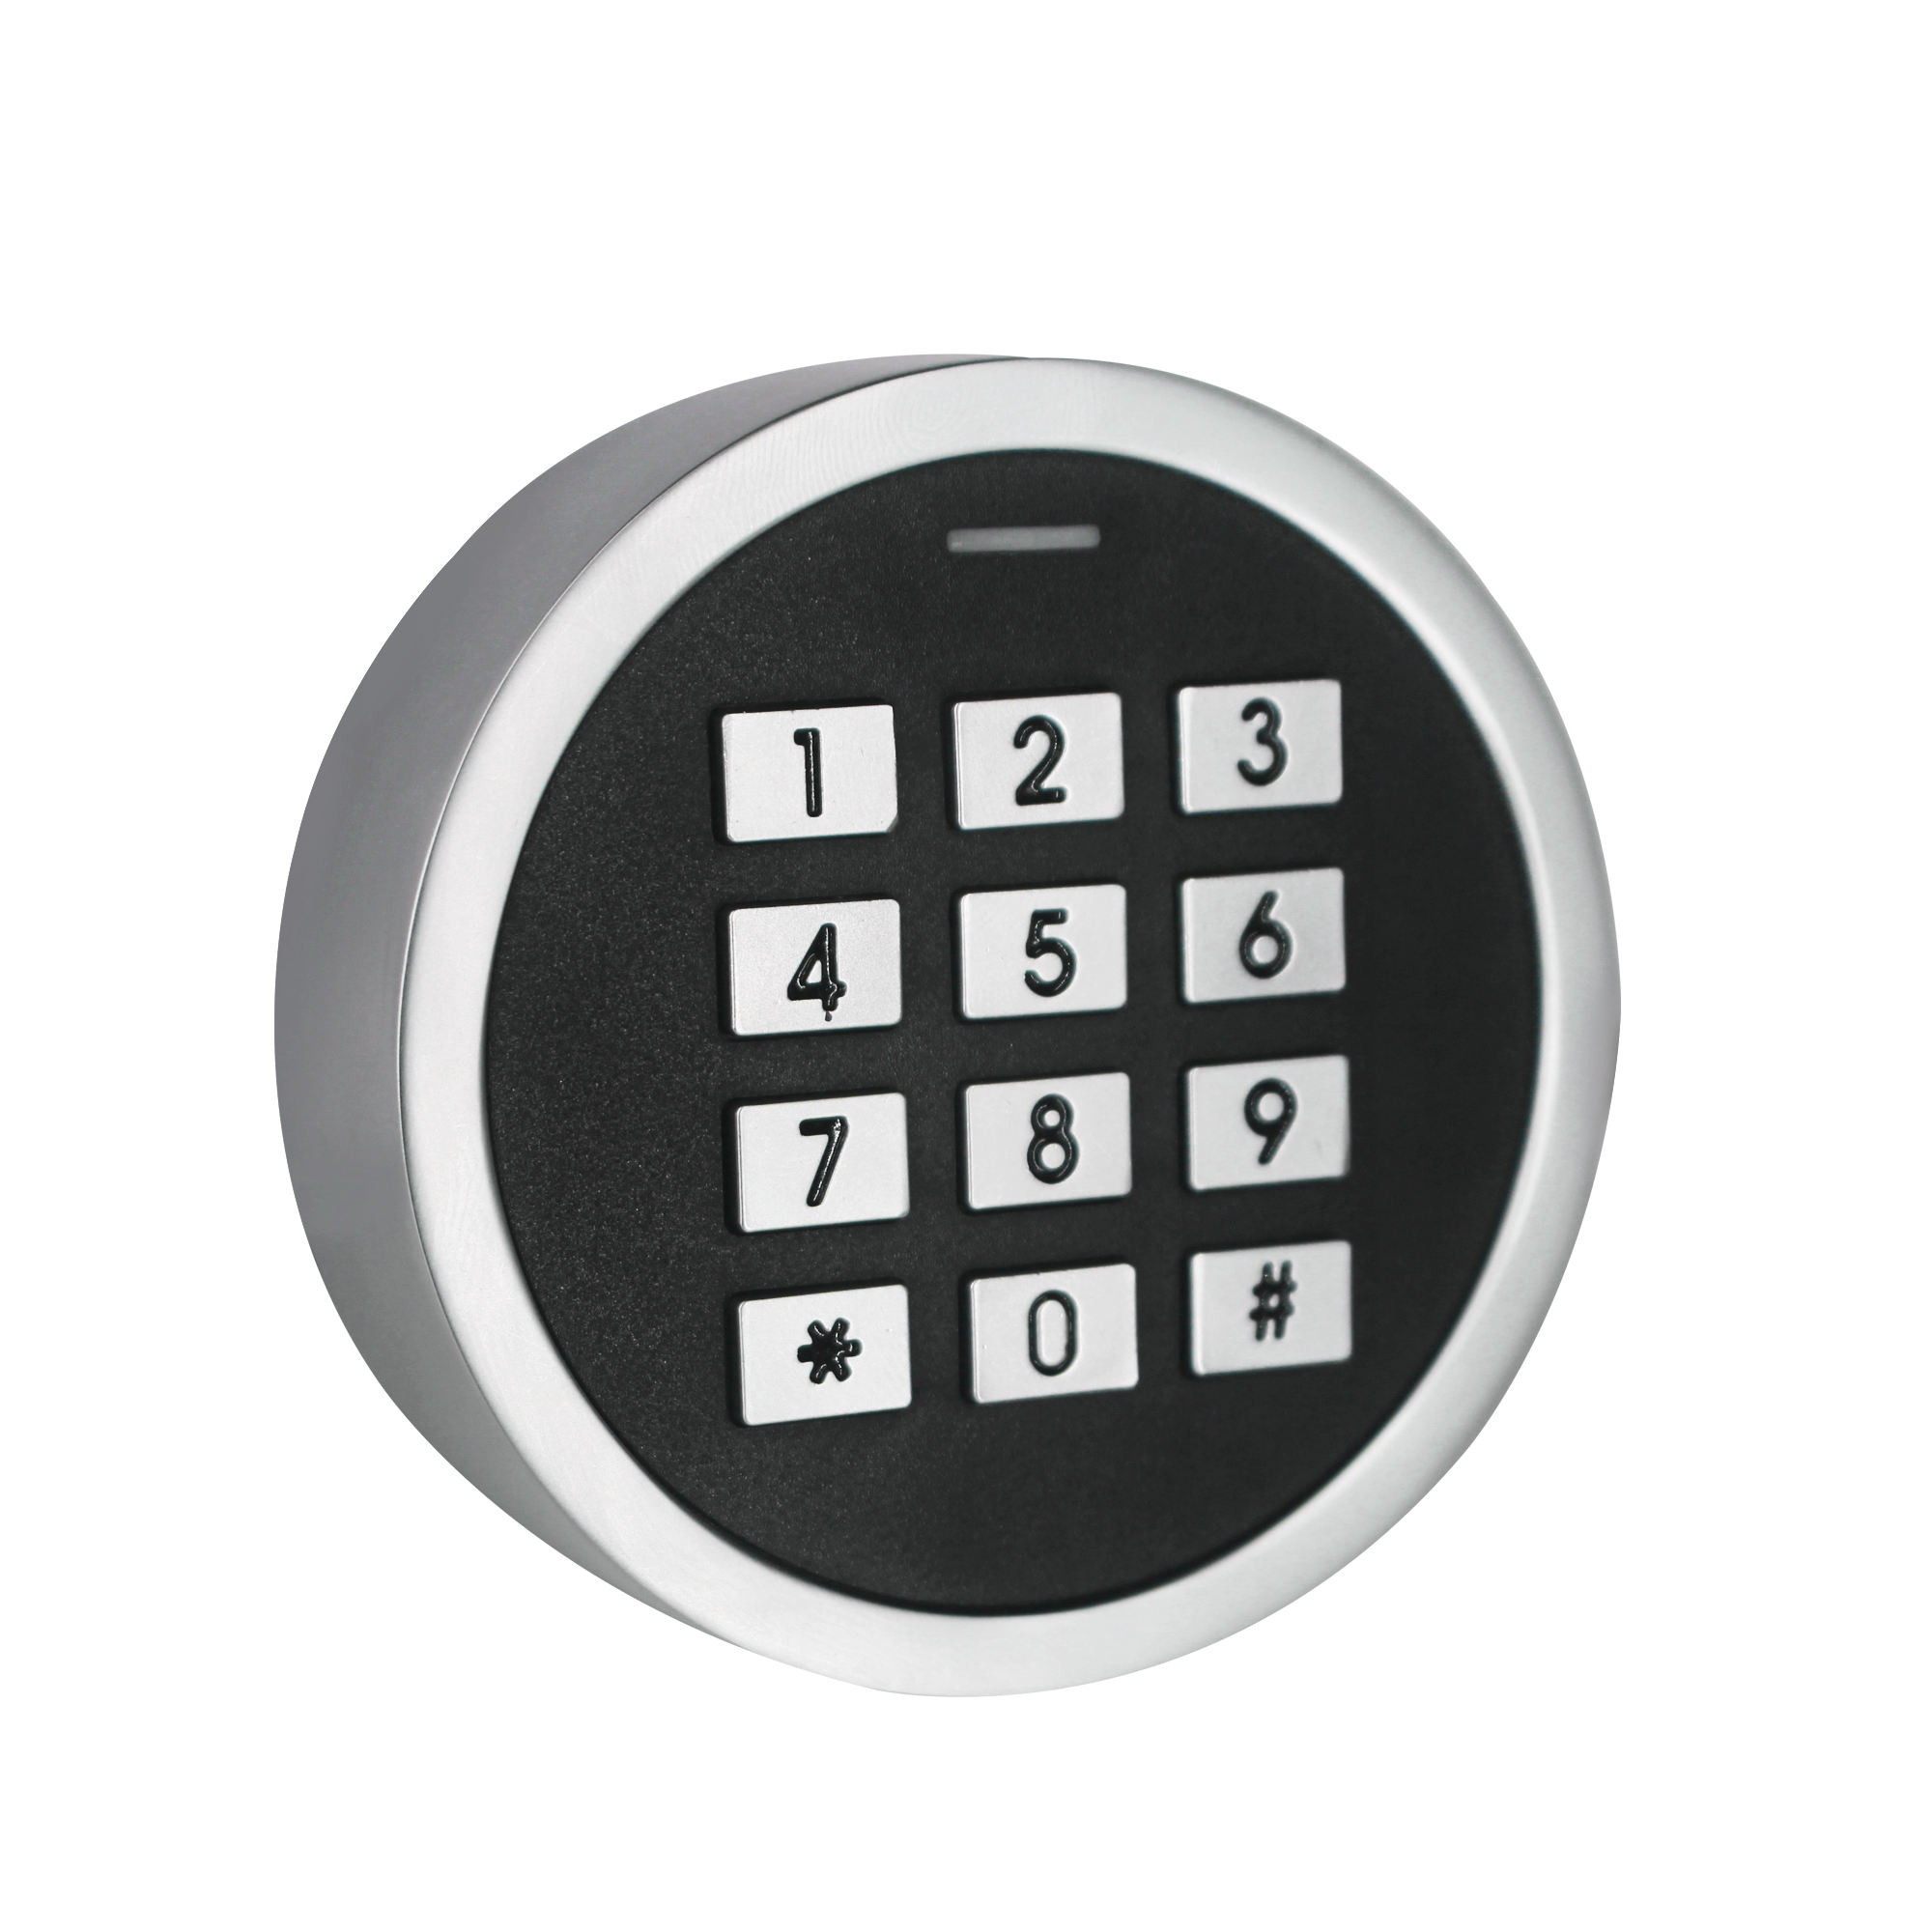 Клавиатура Bluetooth-доступ Металлический мини-контроль доступа с приложением TuyaSmart Устройство считывания RFID-карт